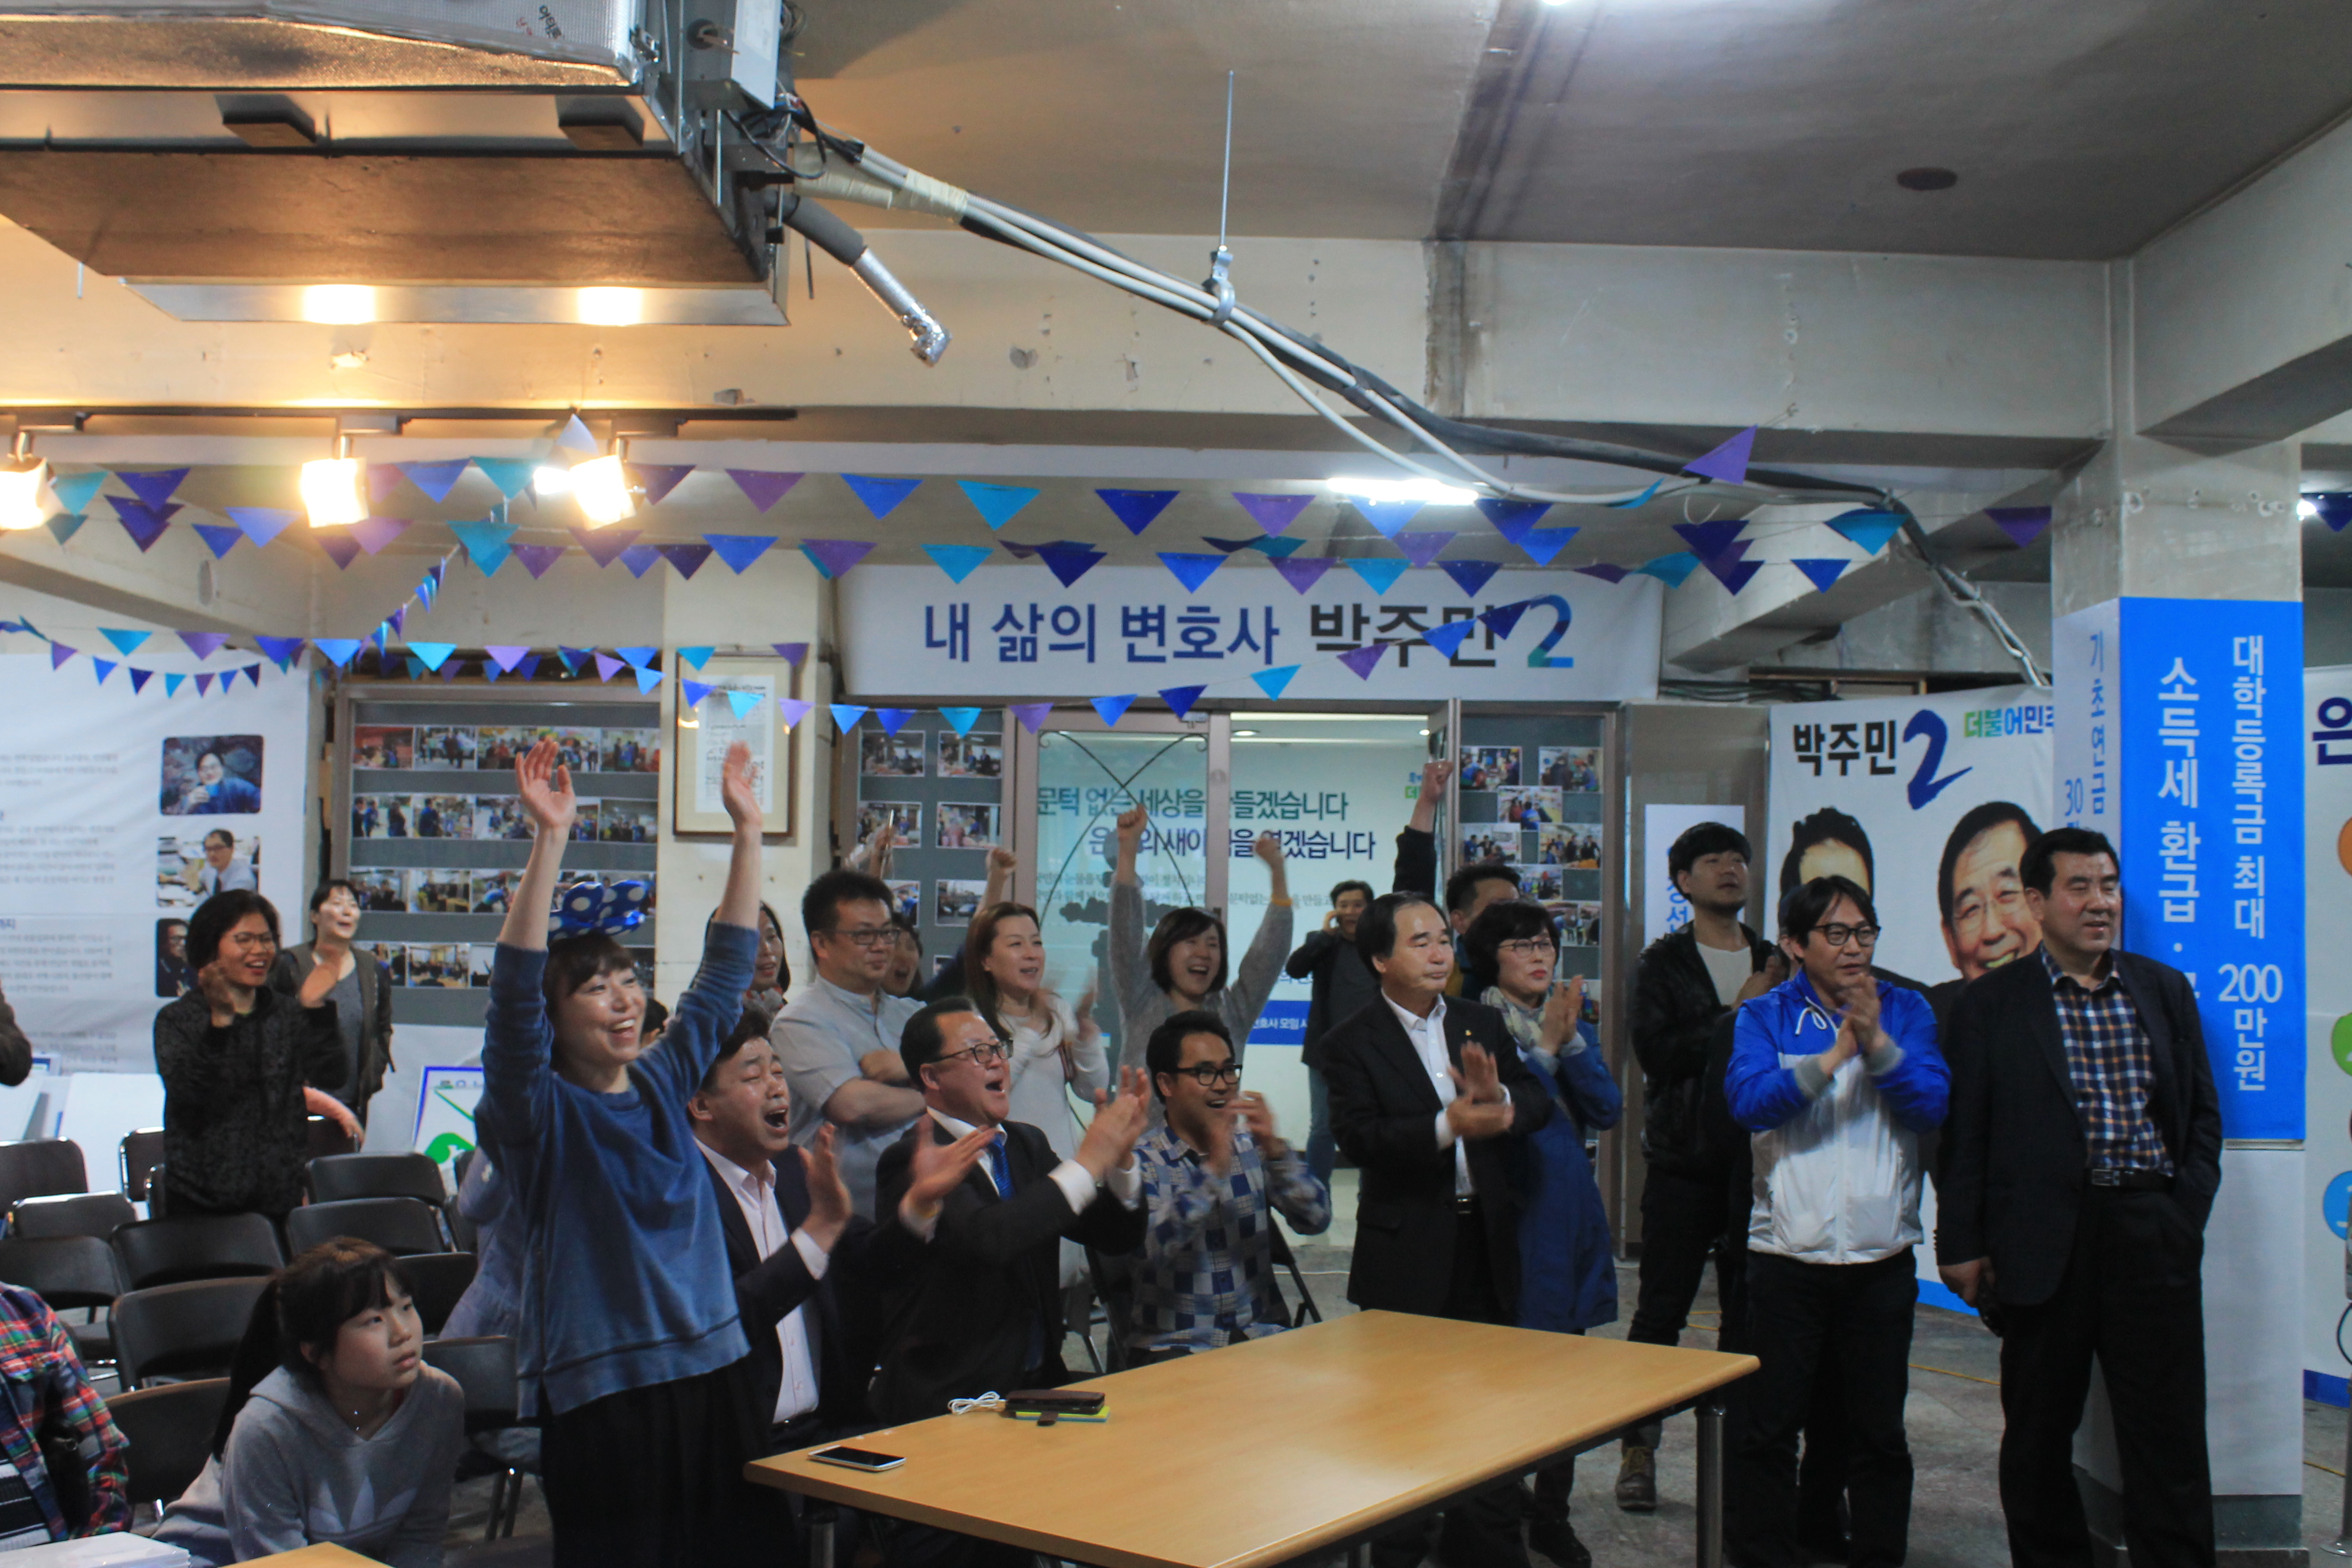  출구조사 결과 은평갑 박주민 후보가 이기는 것으로 나타나자 지지자들이 환호하고 있다.